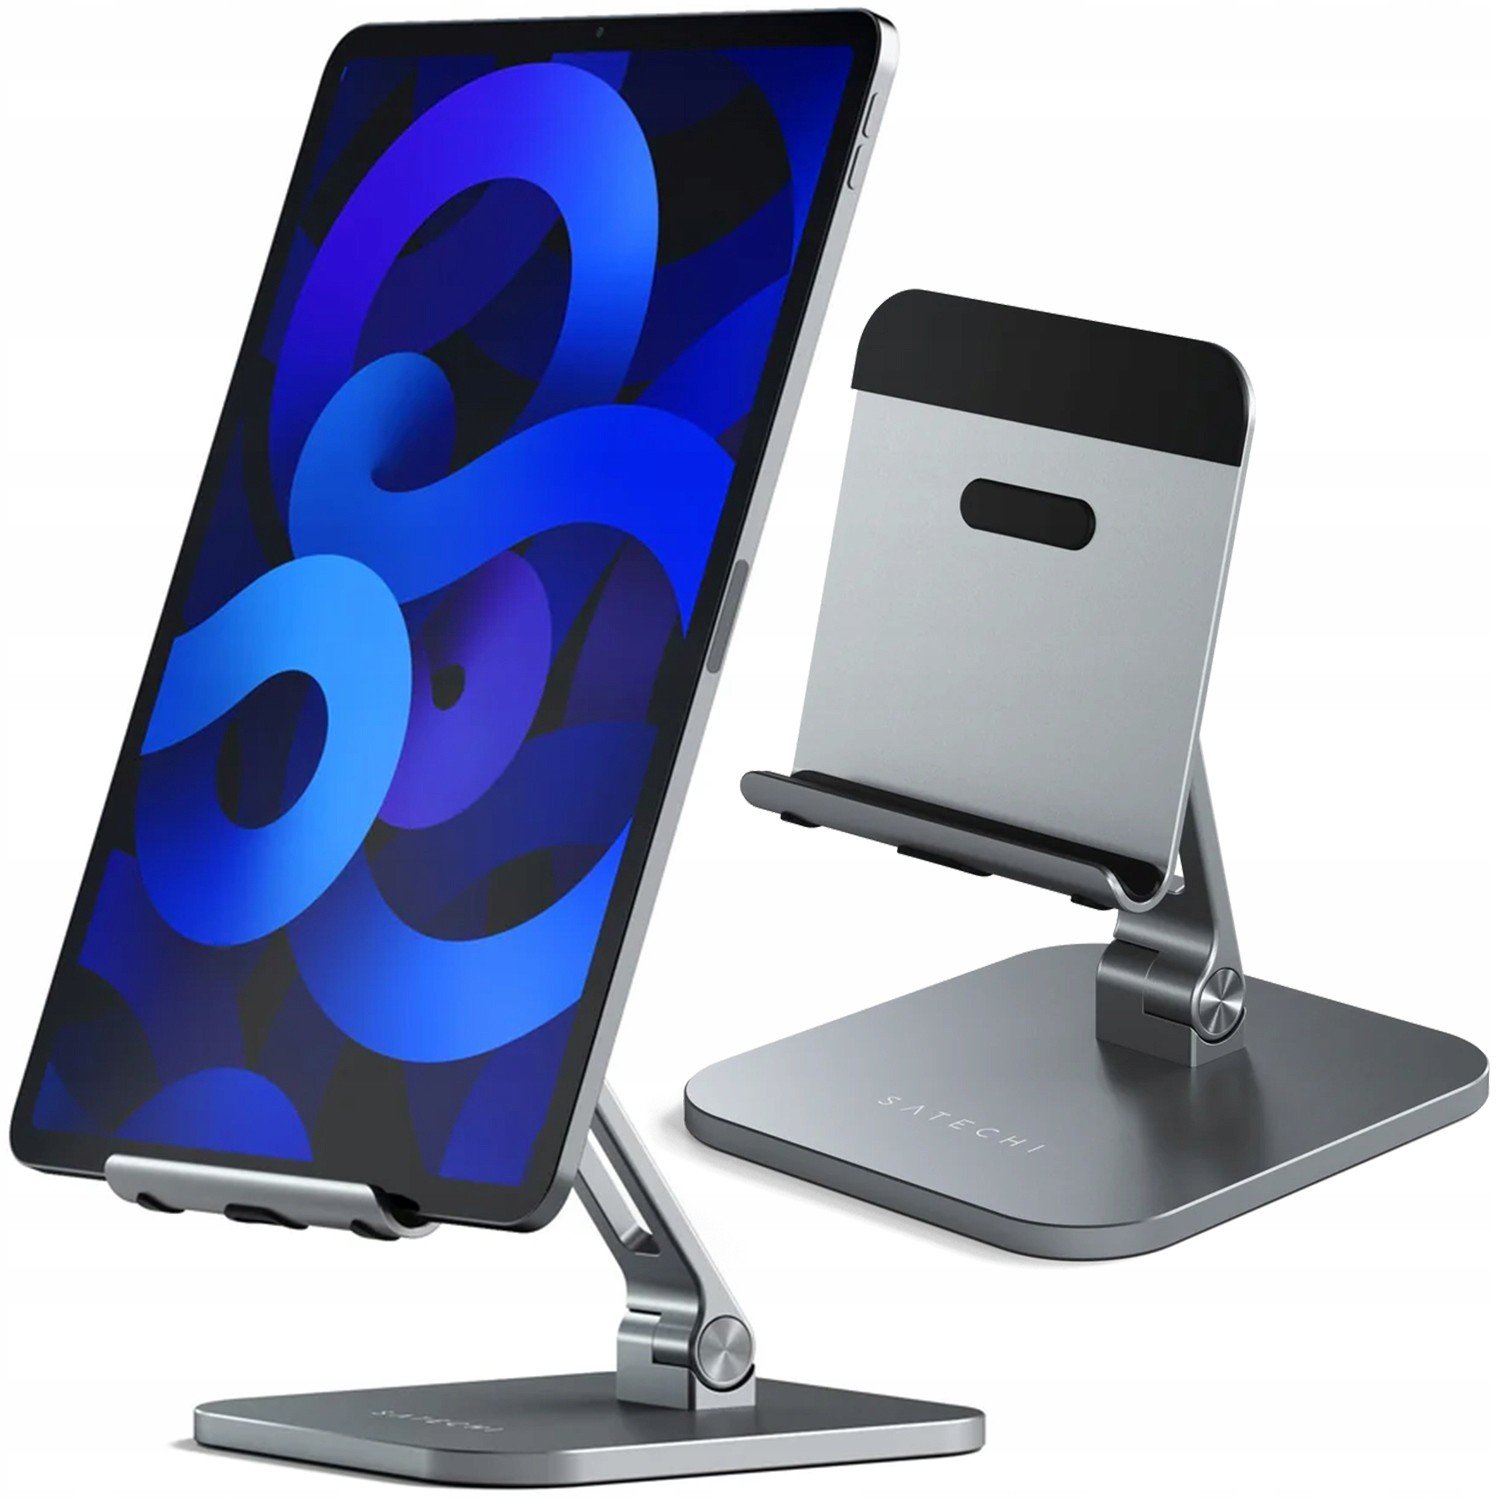 Satechi Stojan Pro Apple Ipad Desktop Stand